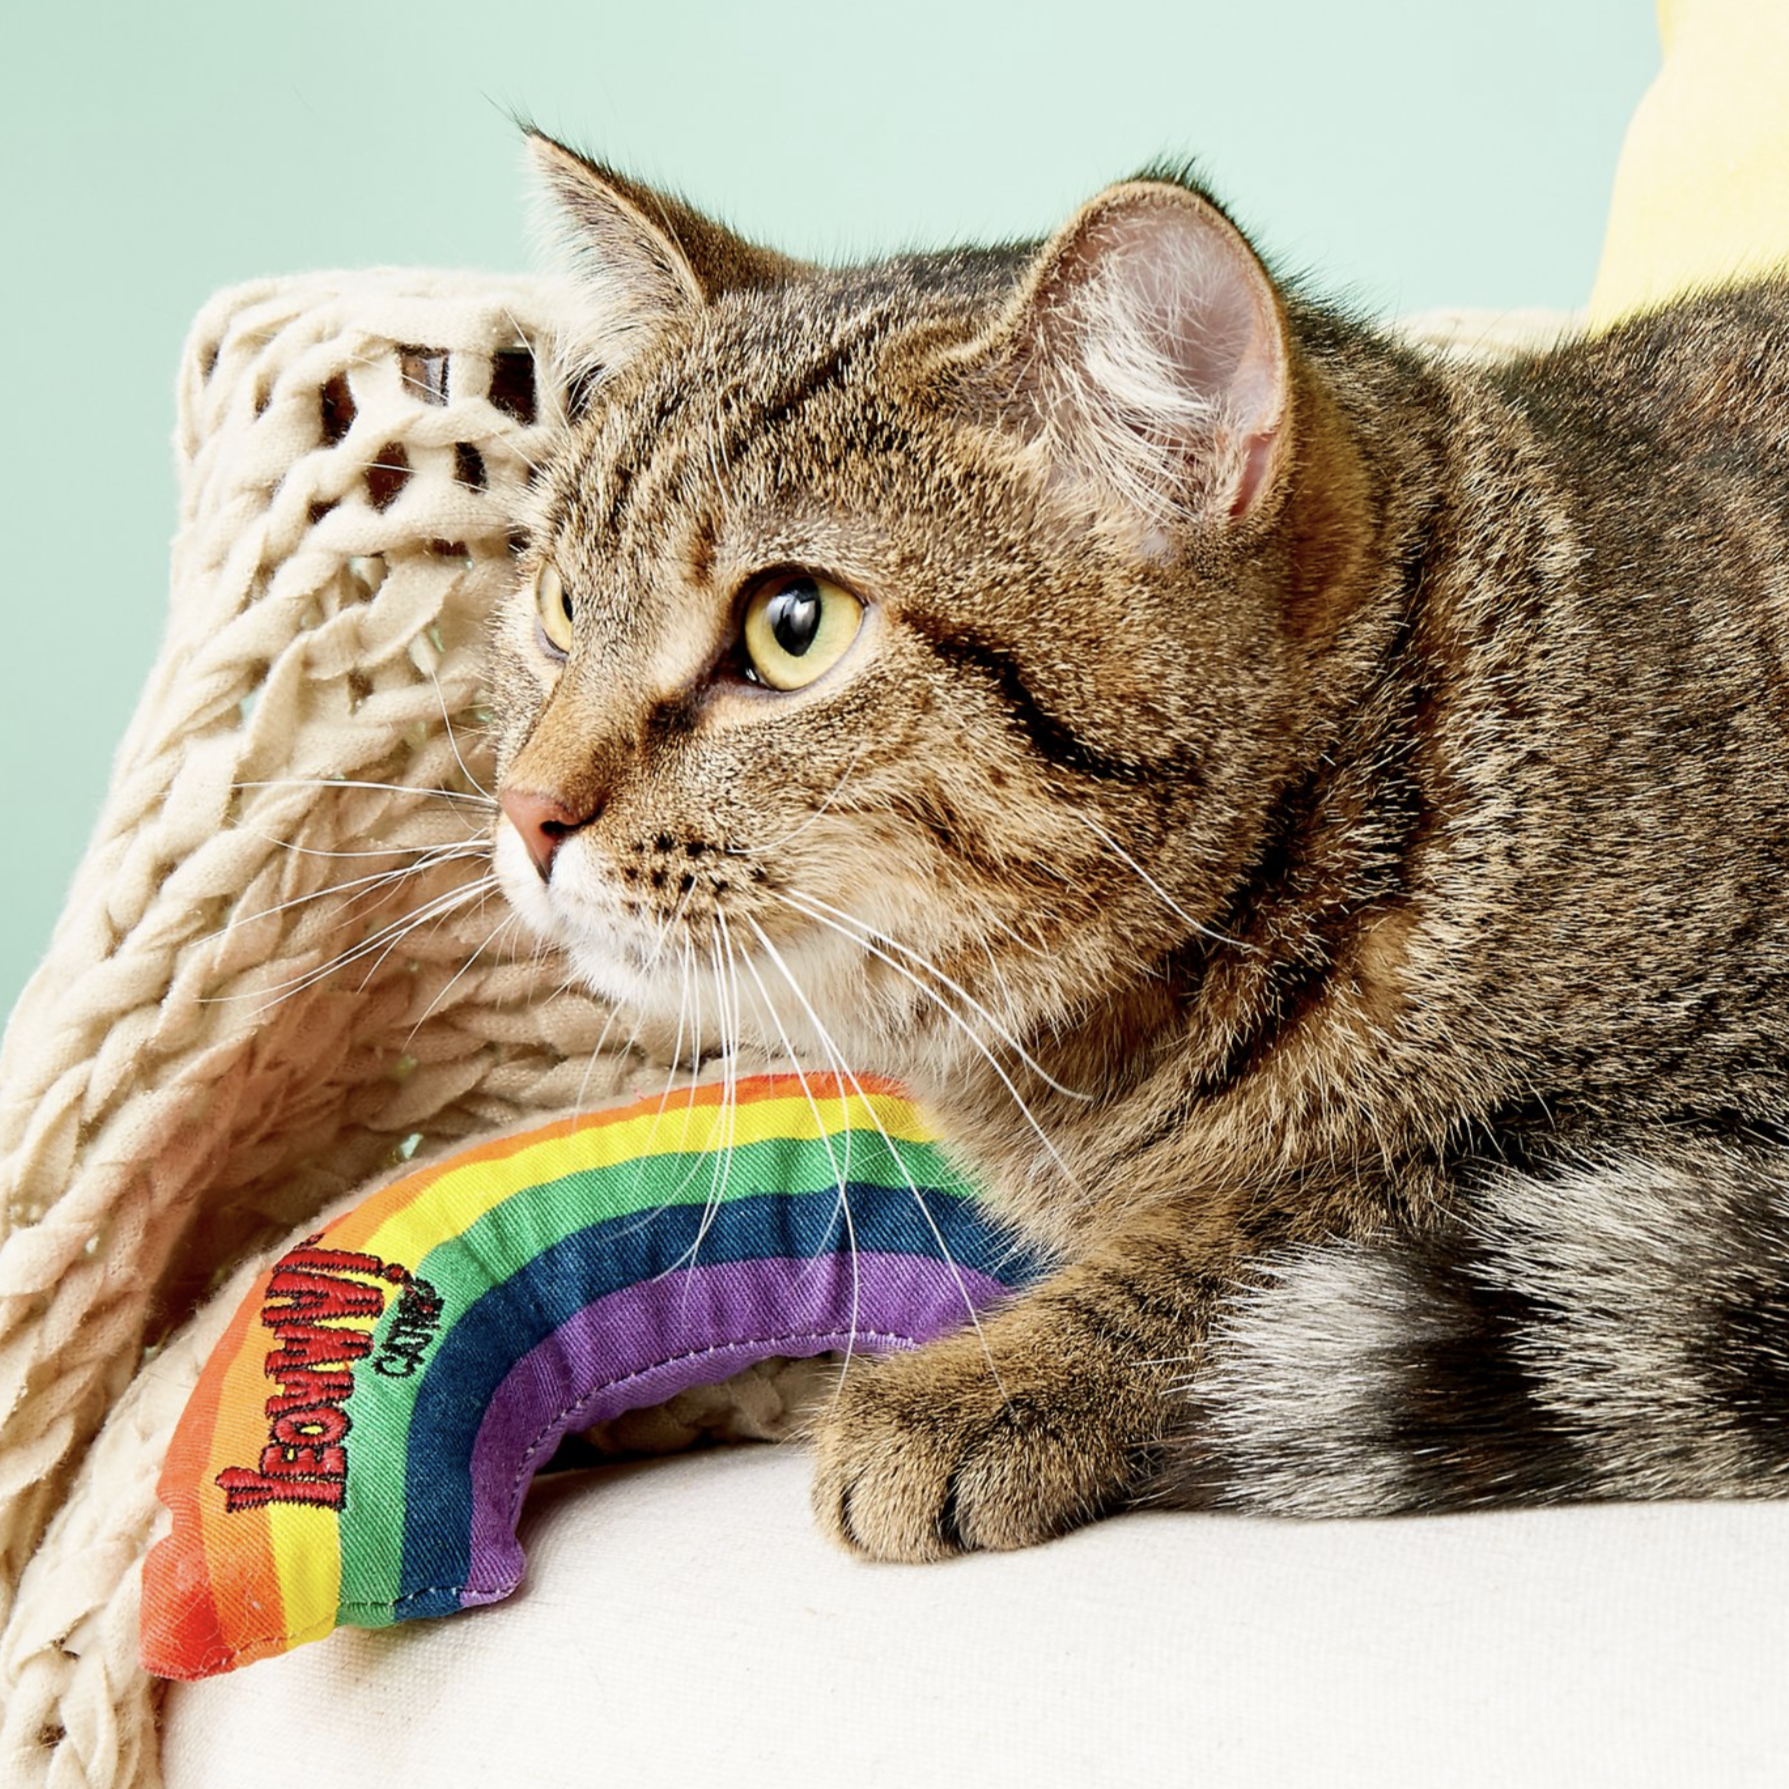 yeowww catnip rainbow